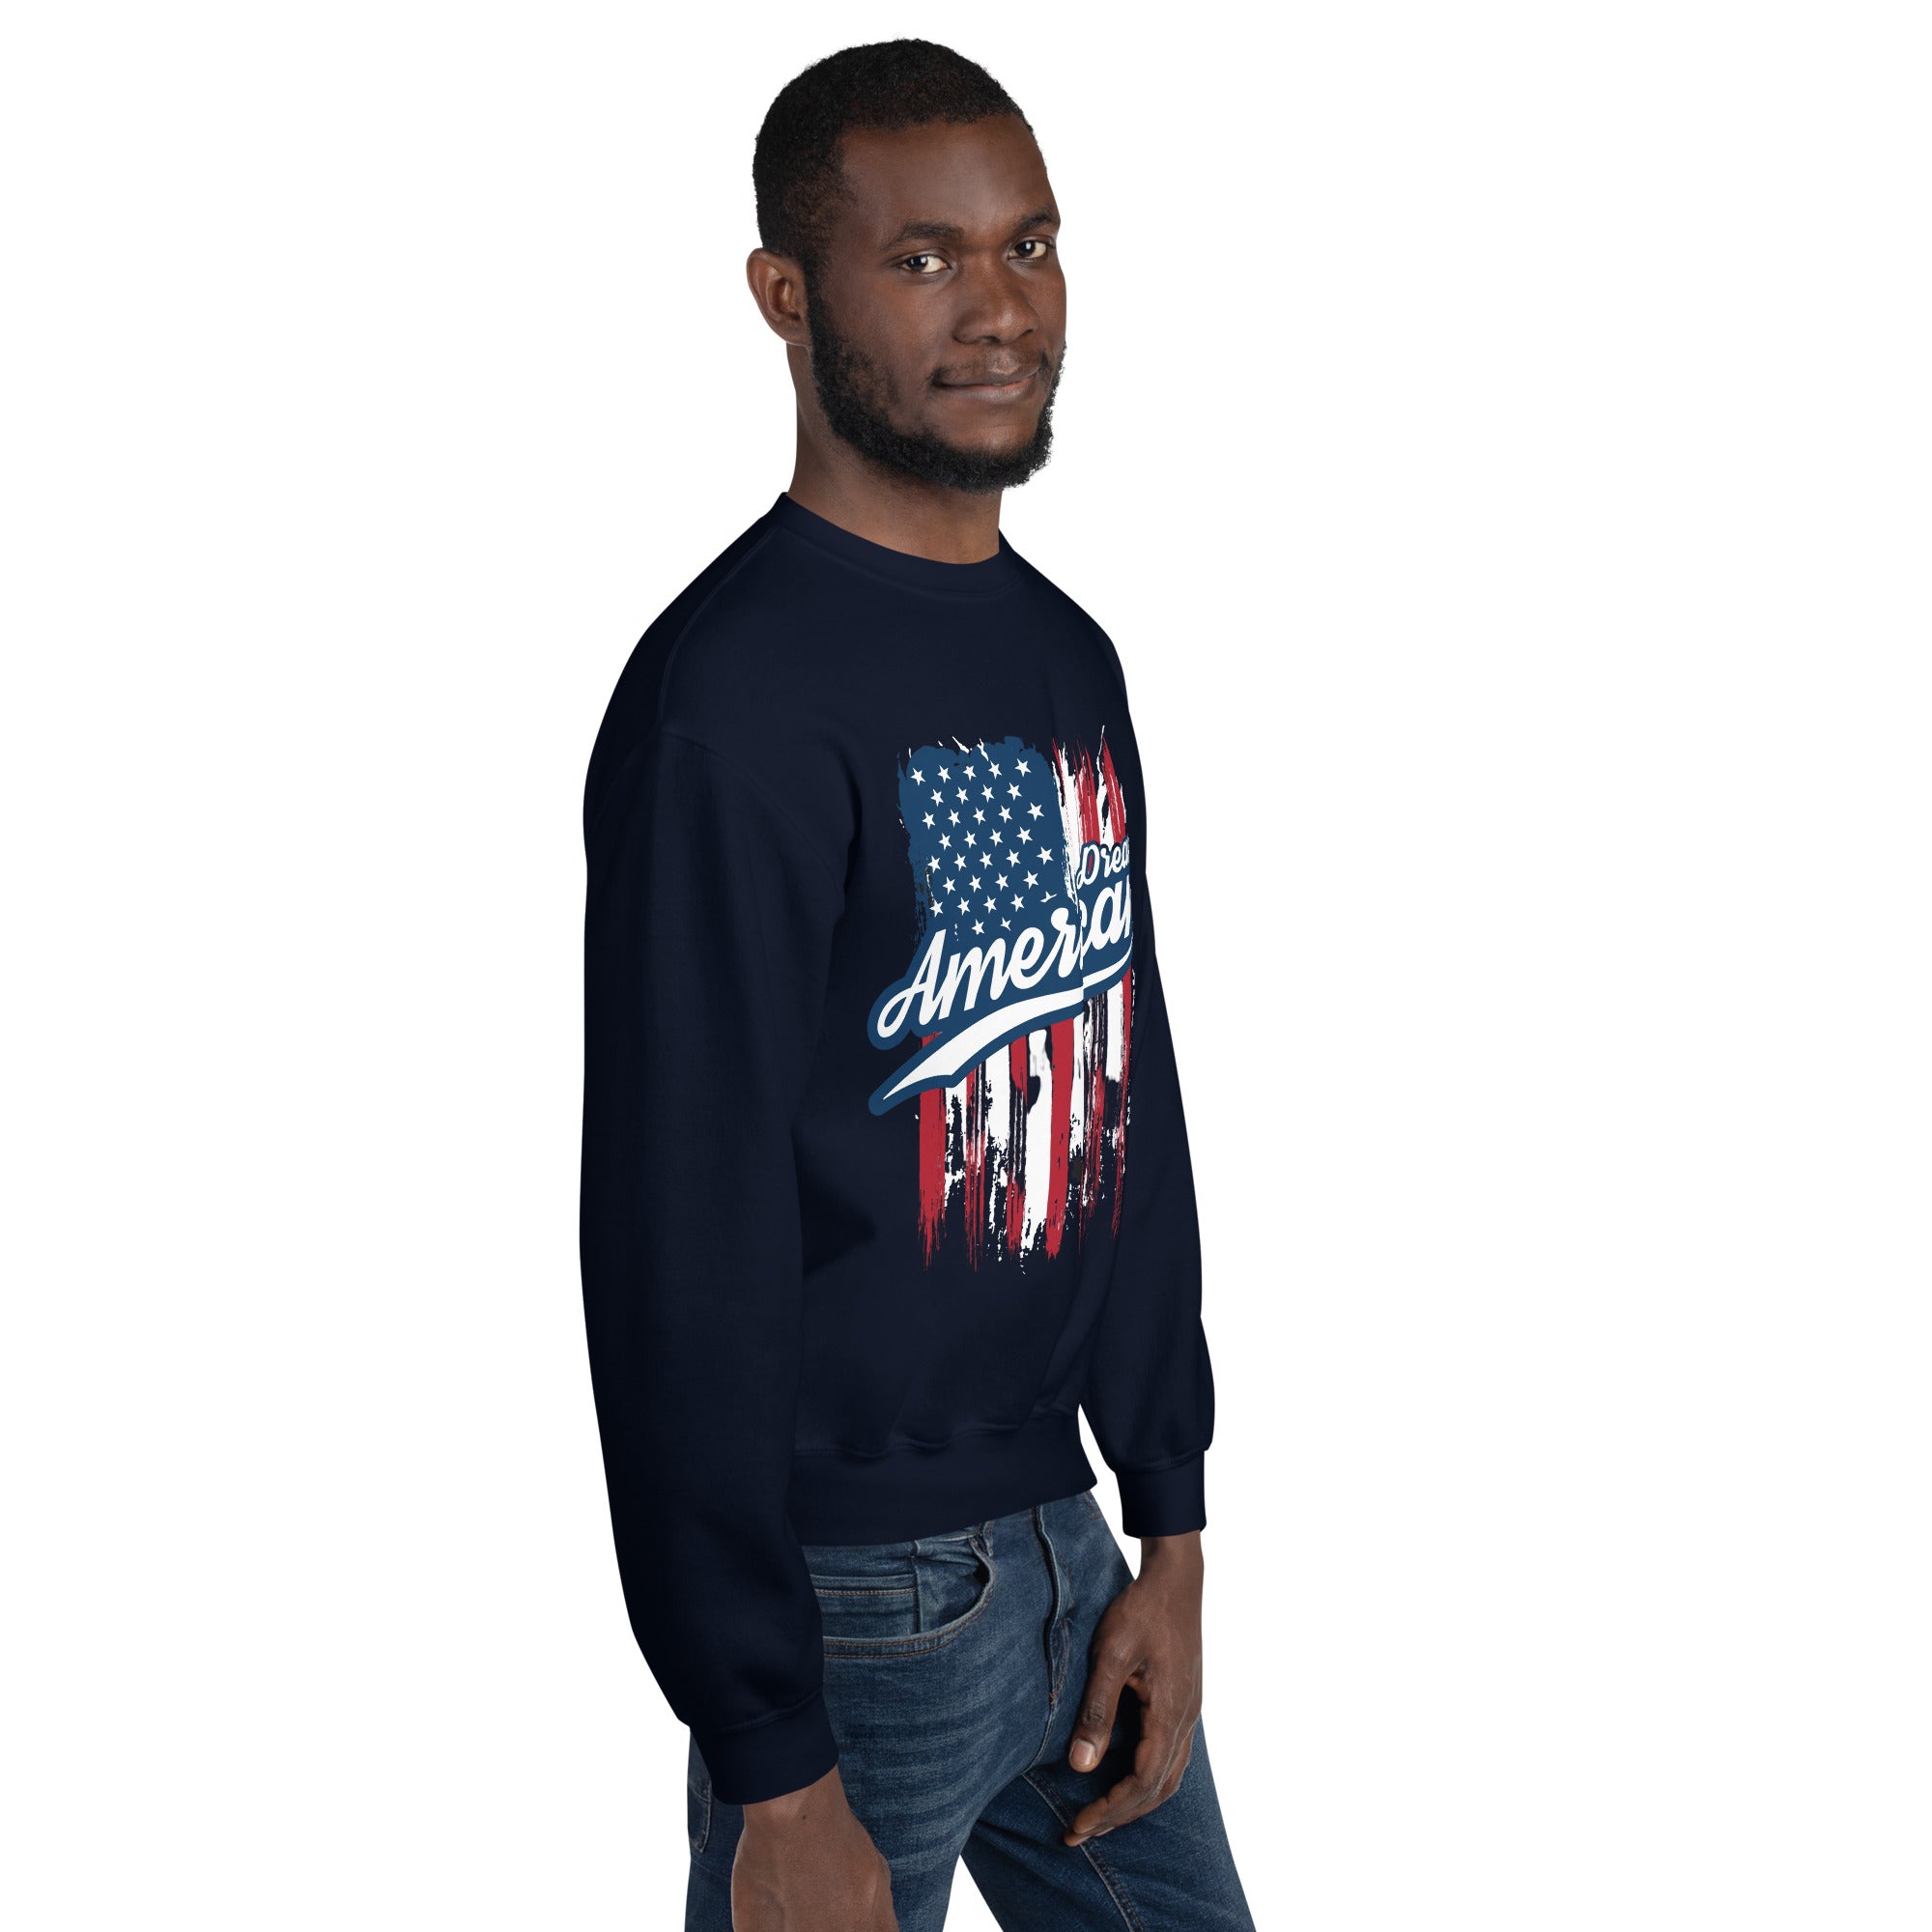 Dream Sweatshirt for men